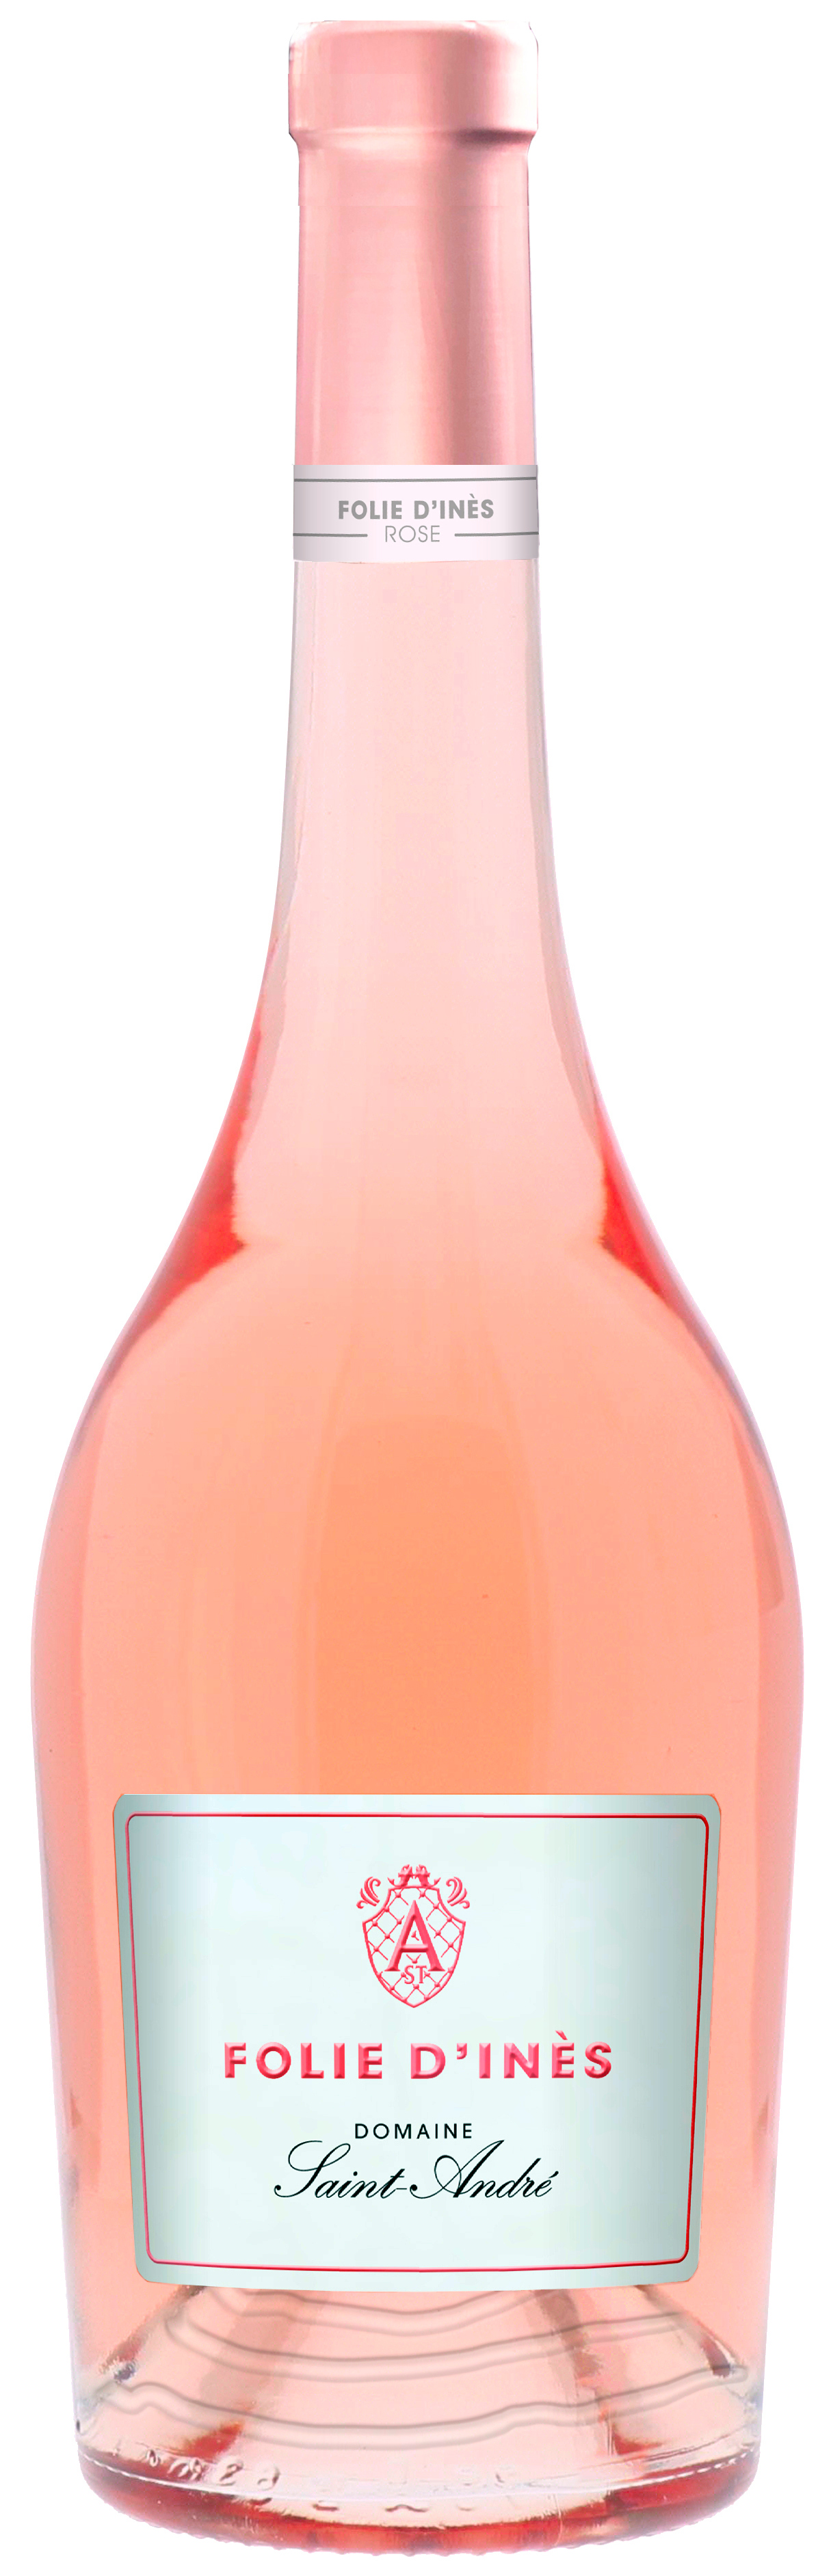 Domaine Saint-Andre Folie d'Ines 2021 rosé                  